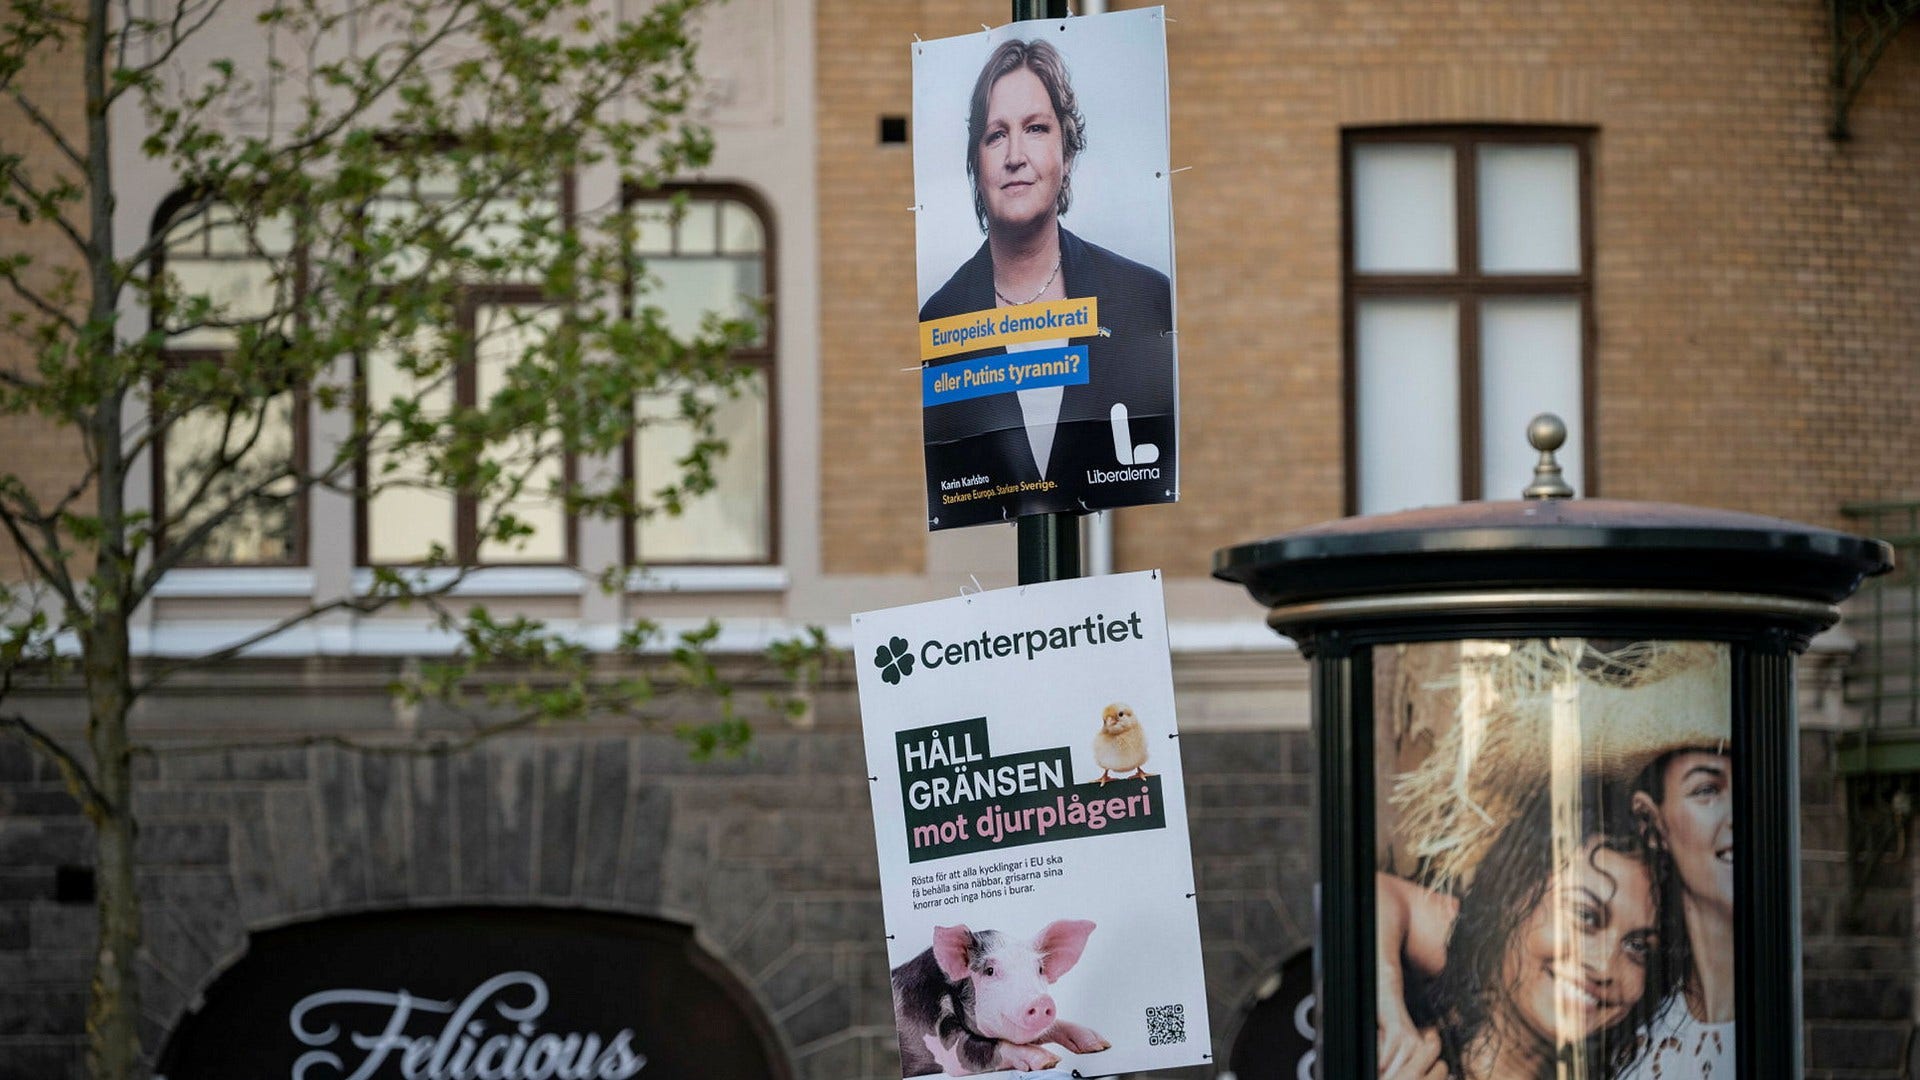 Valaffischer inför EU-valet i Lund. Den 22 maj inleds förtidsröstningen inför valdagen den 9 juni, vilket DN och andra medier borde ägna större intresse åt, anser insändarskribenten.